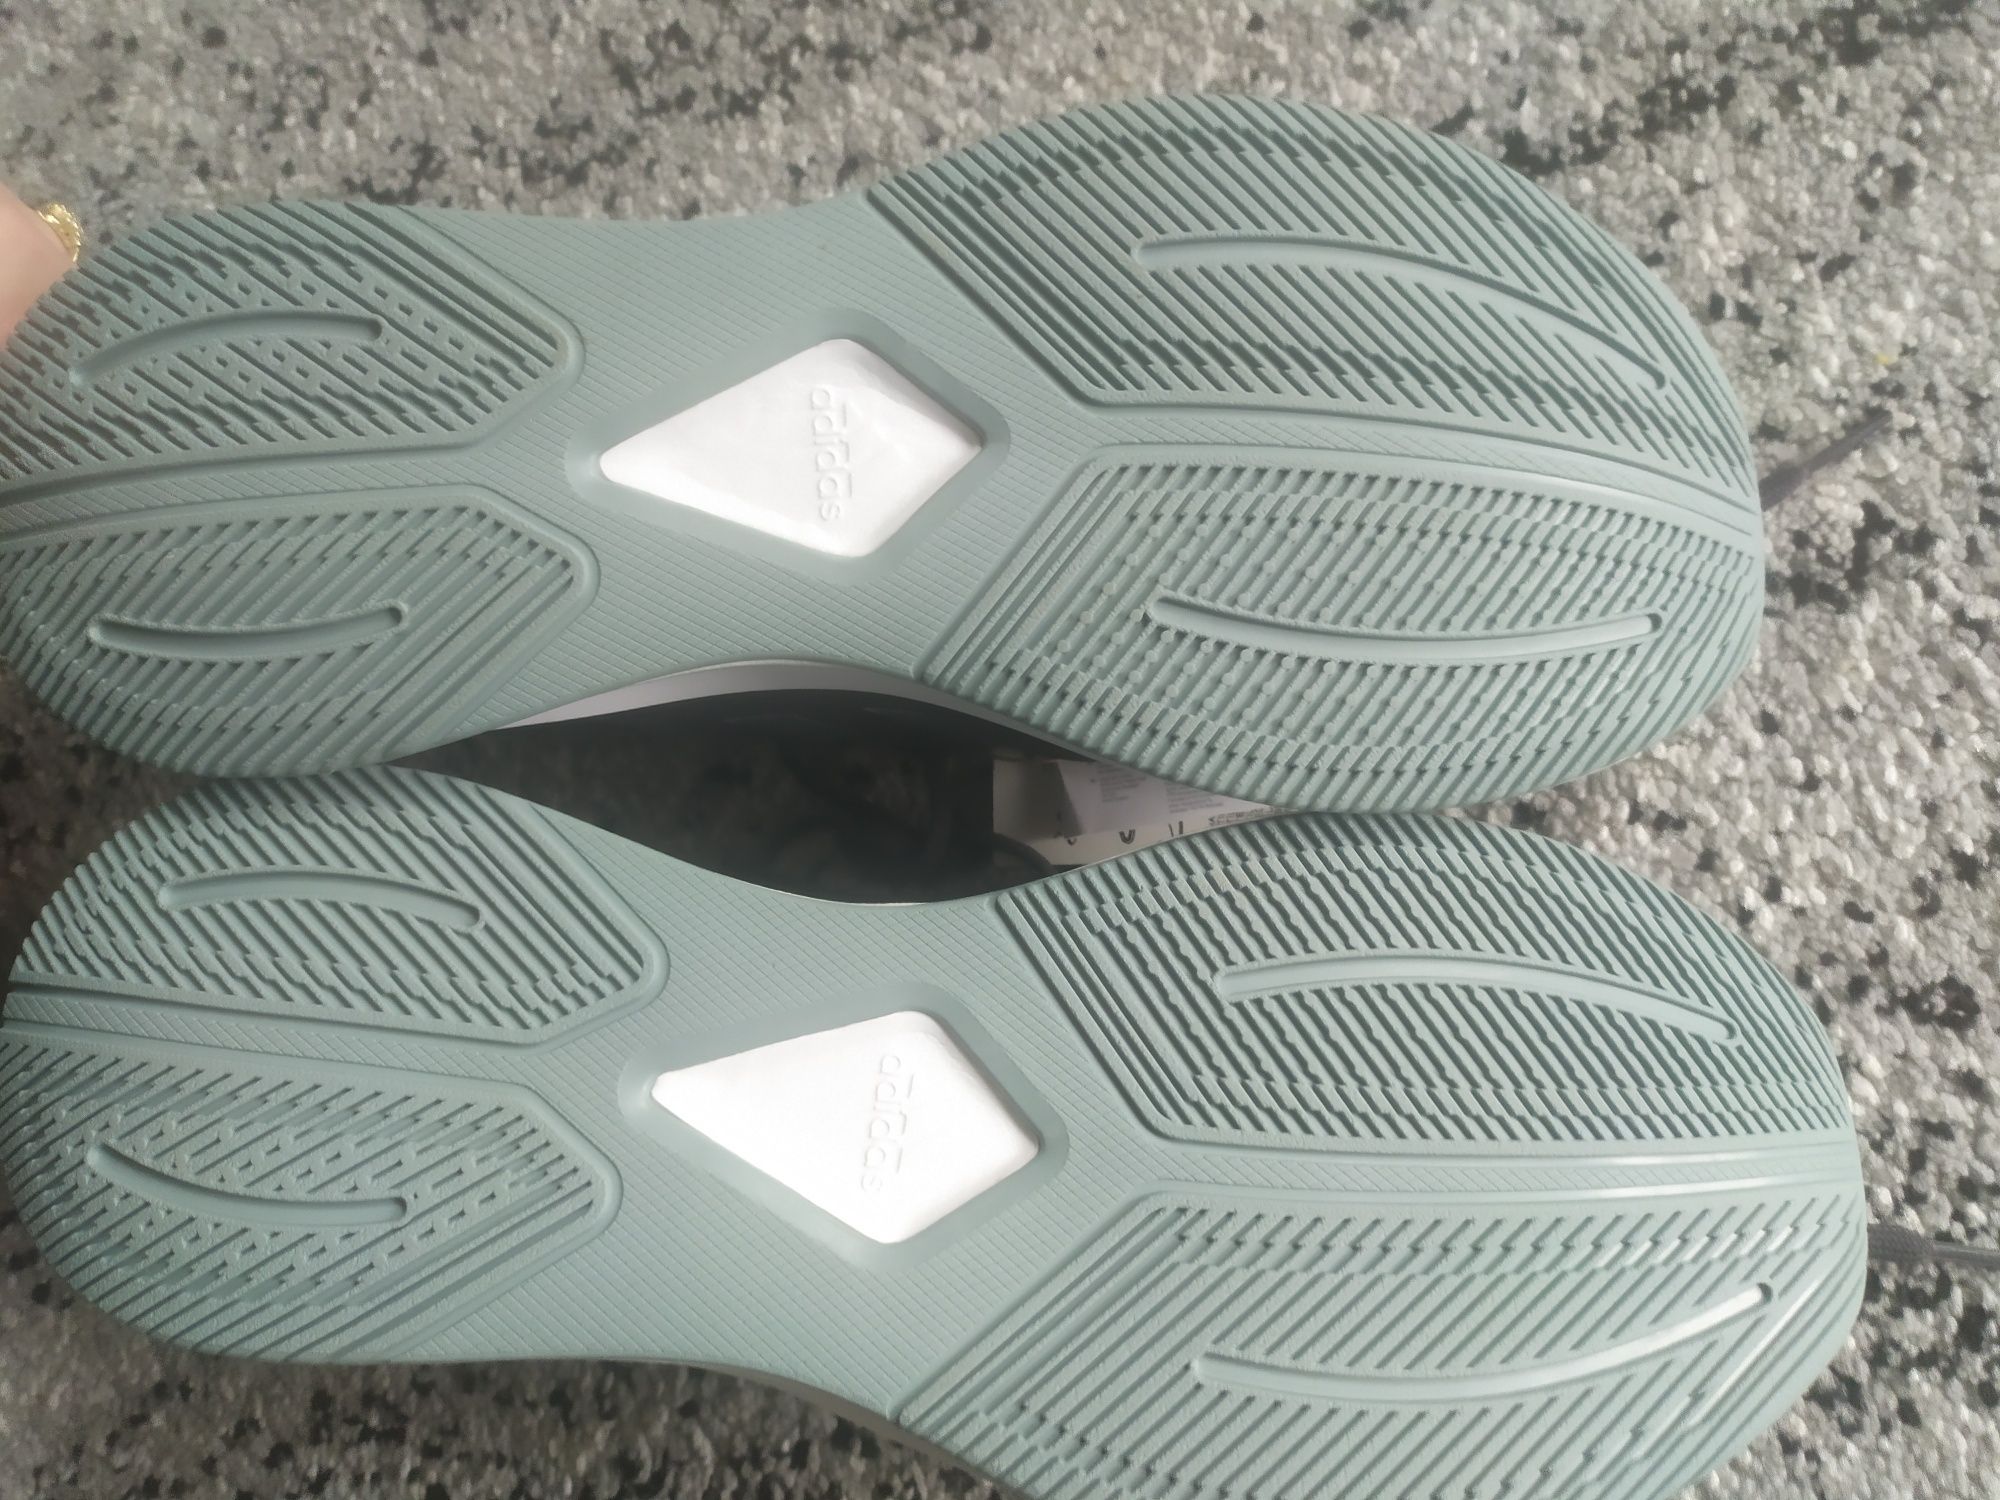 Nowe z metką buty ADIDAS rozmiar 12 UK